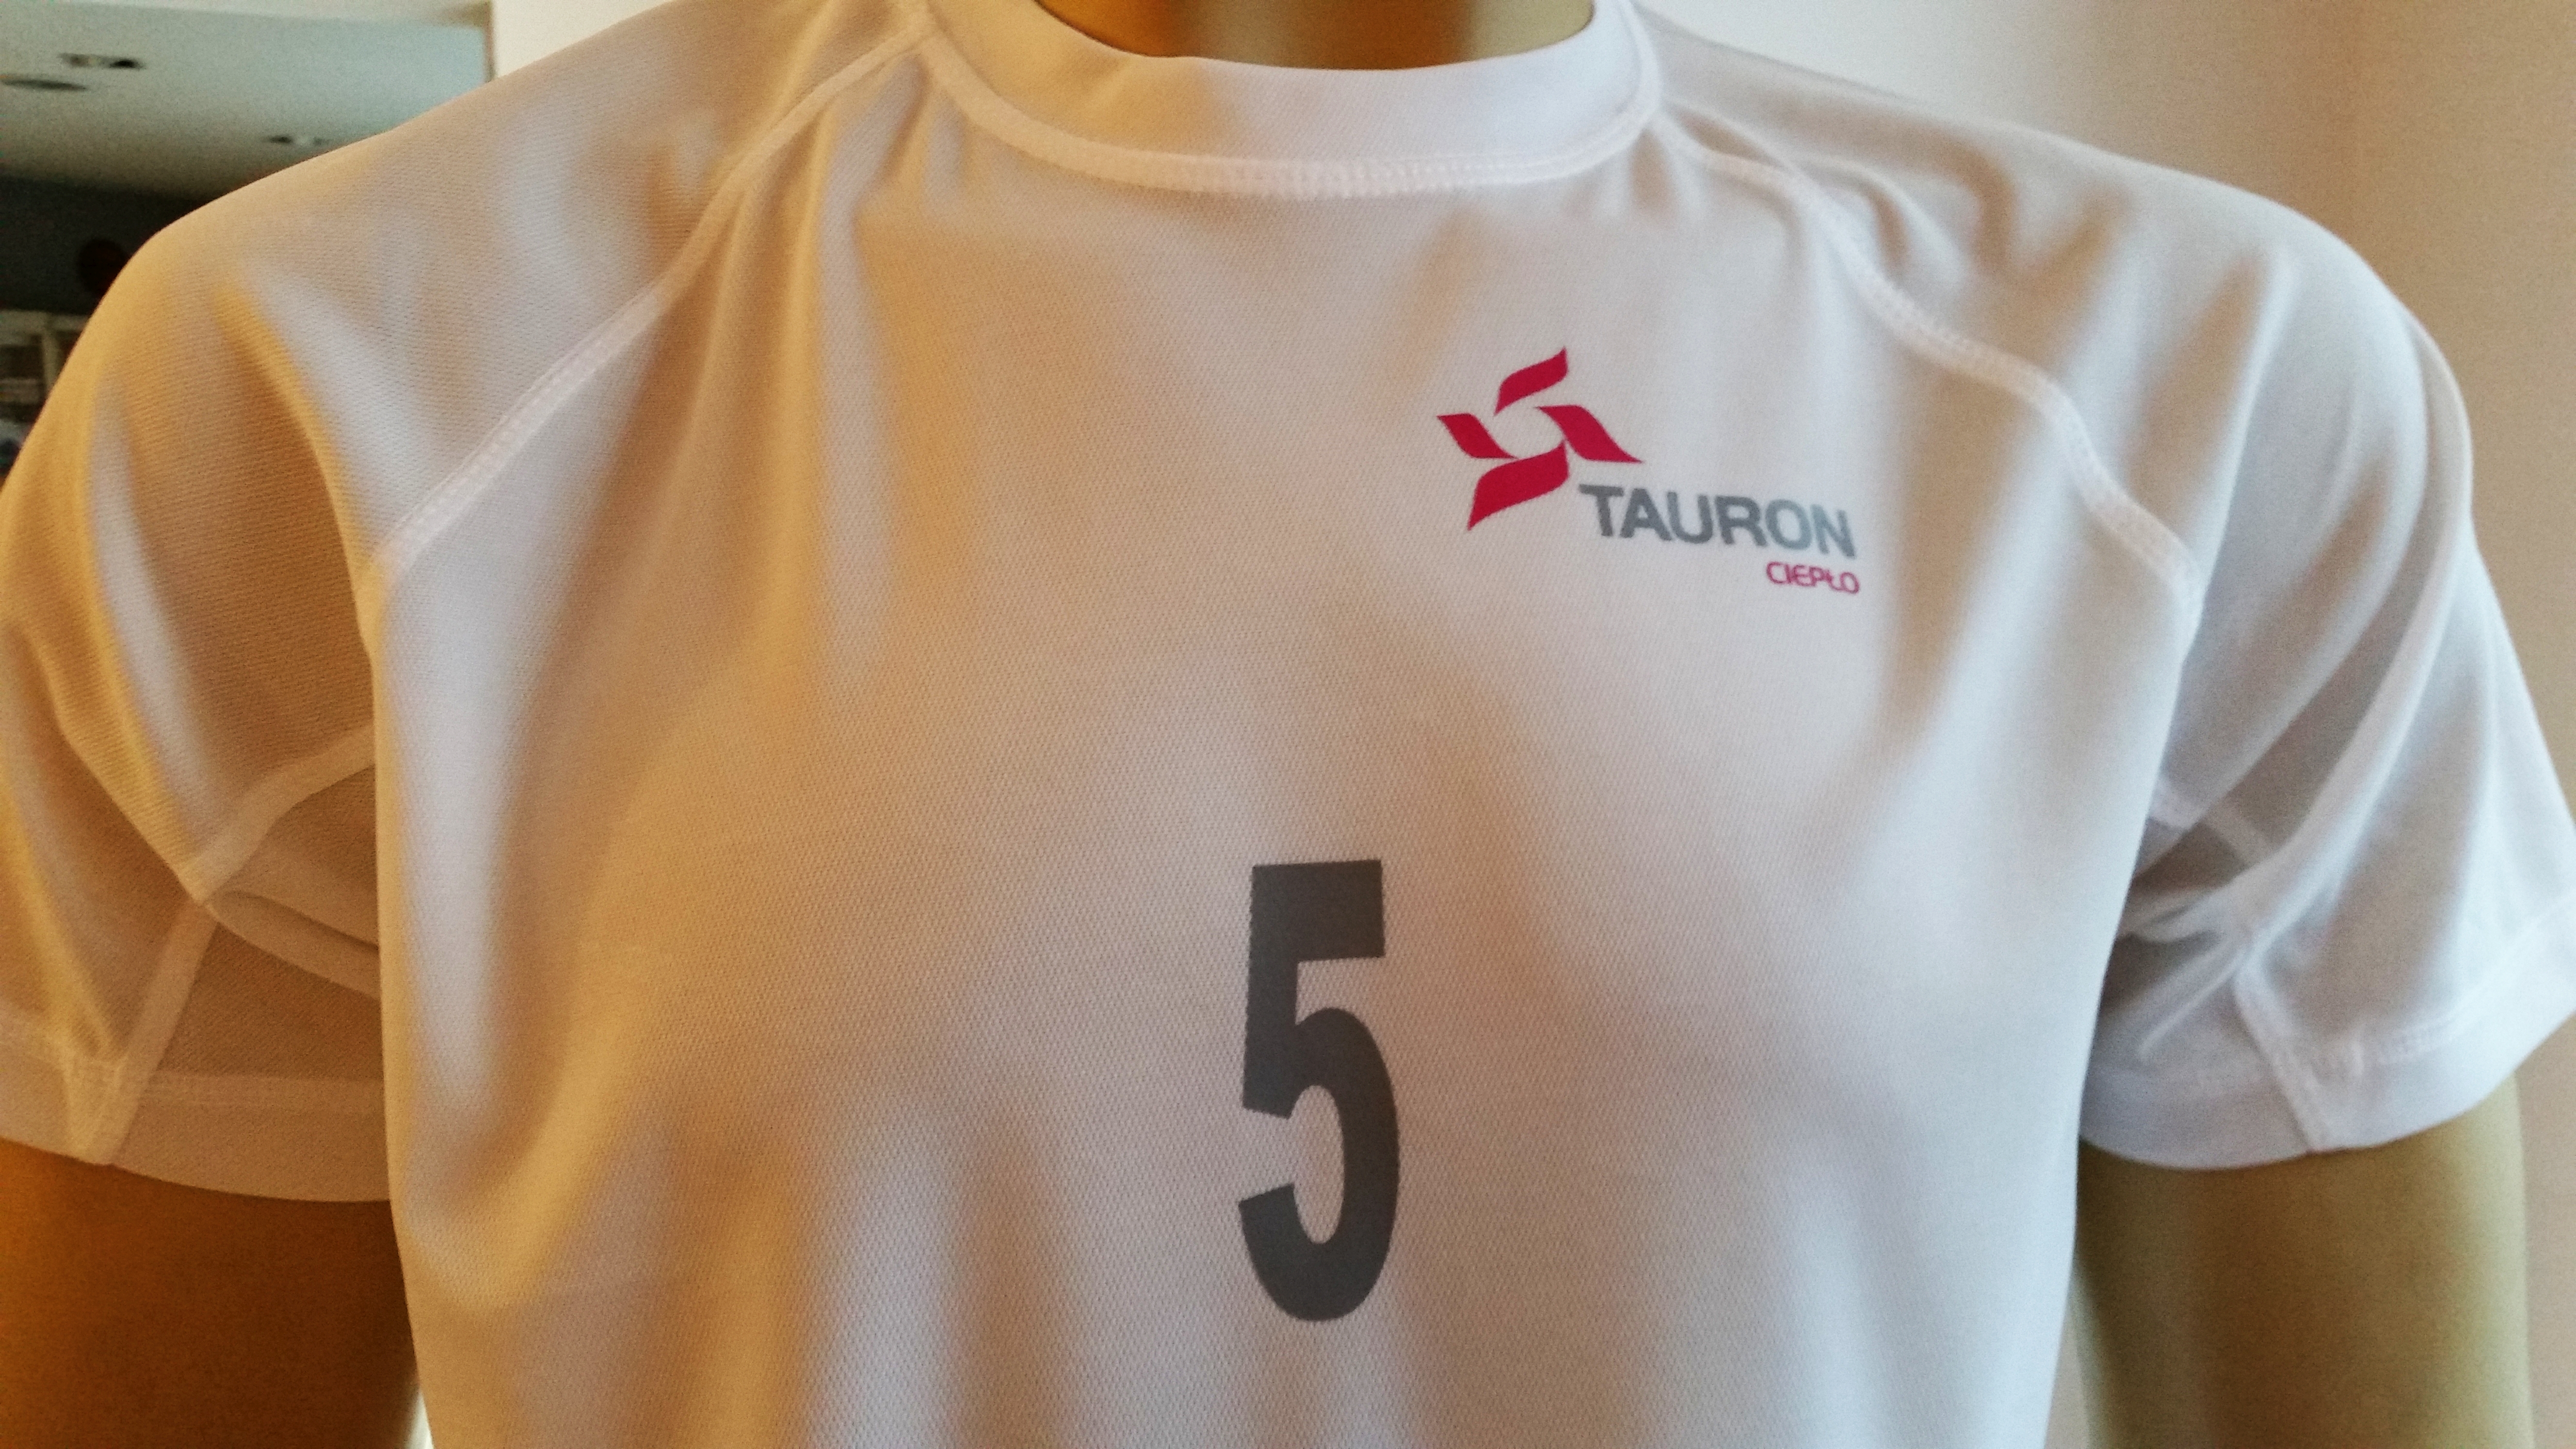 mały numer i logo TAURON na koszulkach treningowych